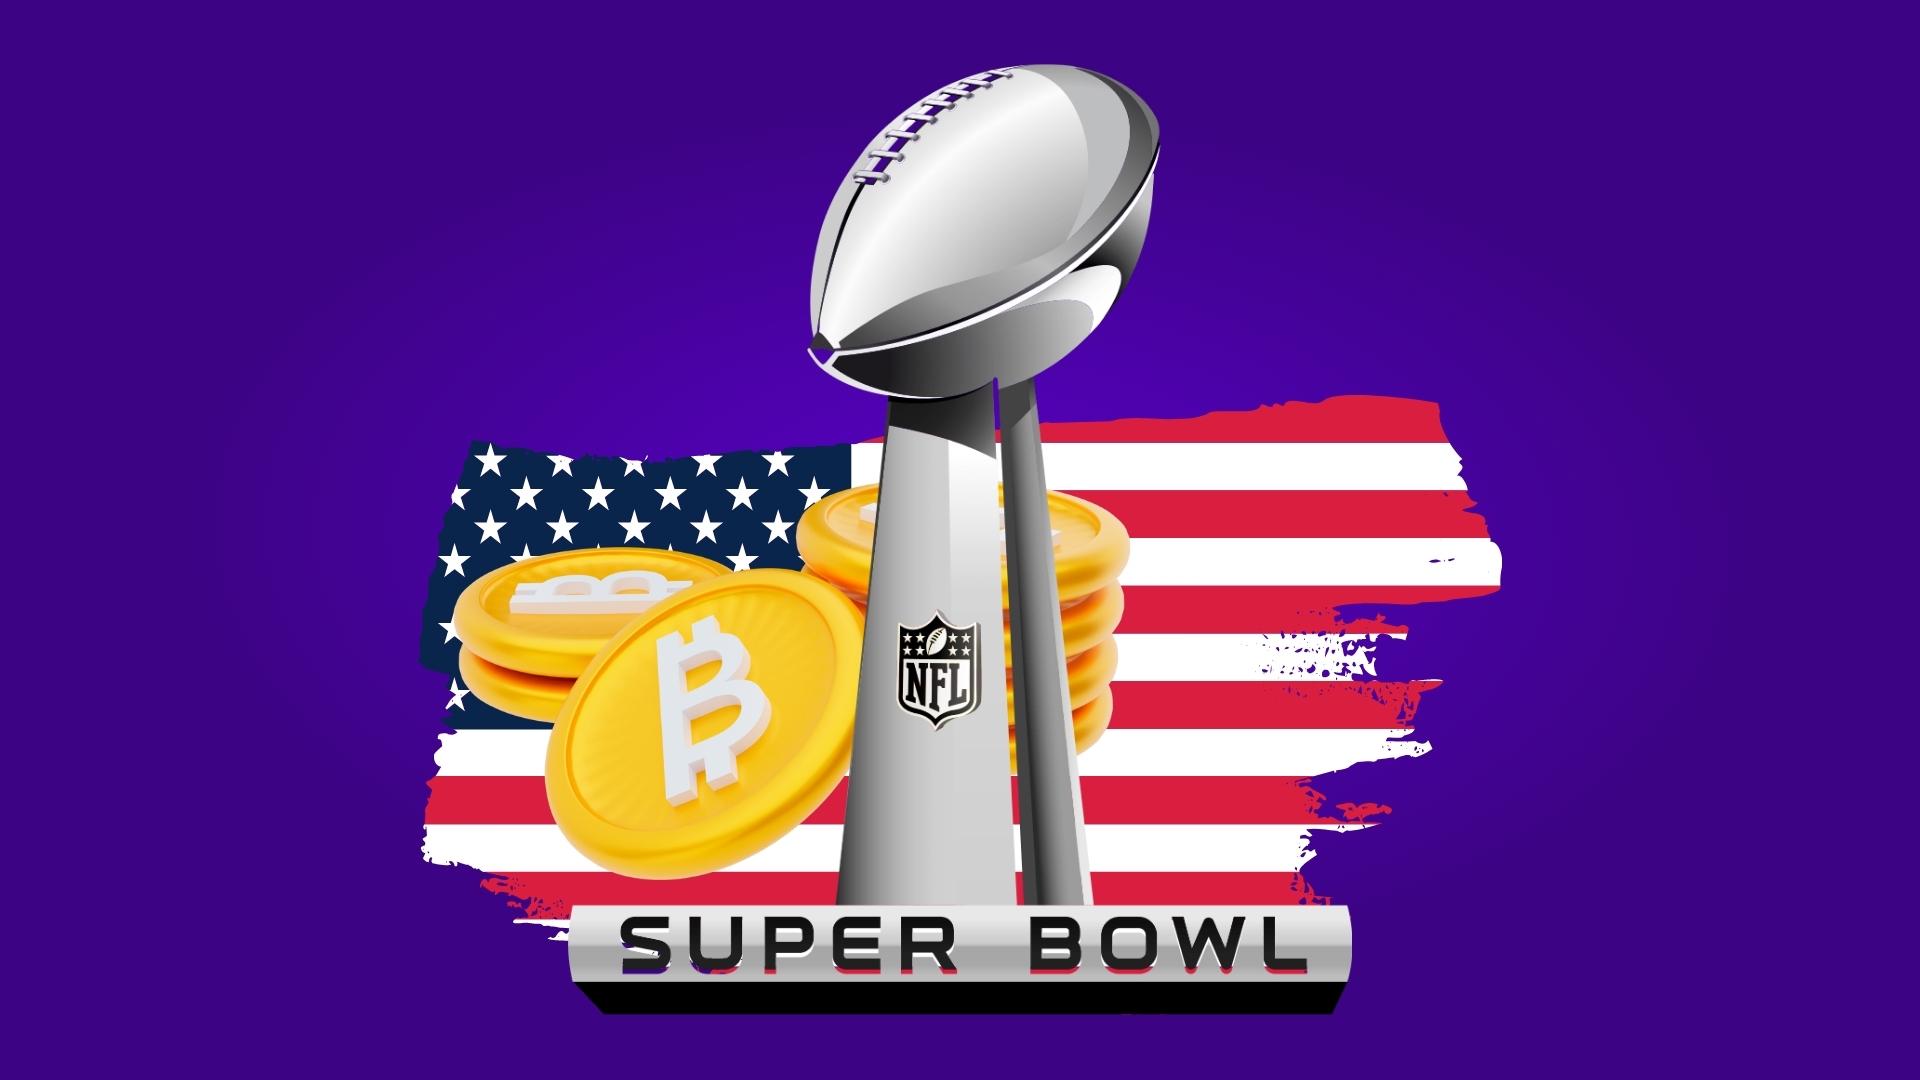 Биржа FTX раздаст биткоины в рамках рекламной компании Super Bowl LVI.